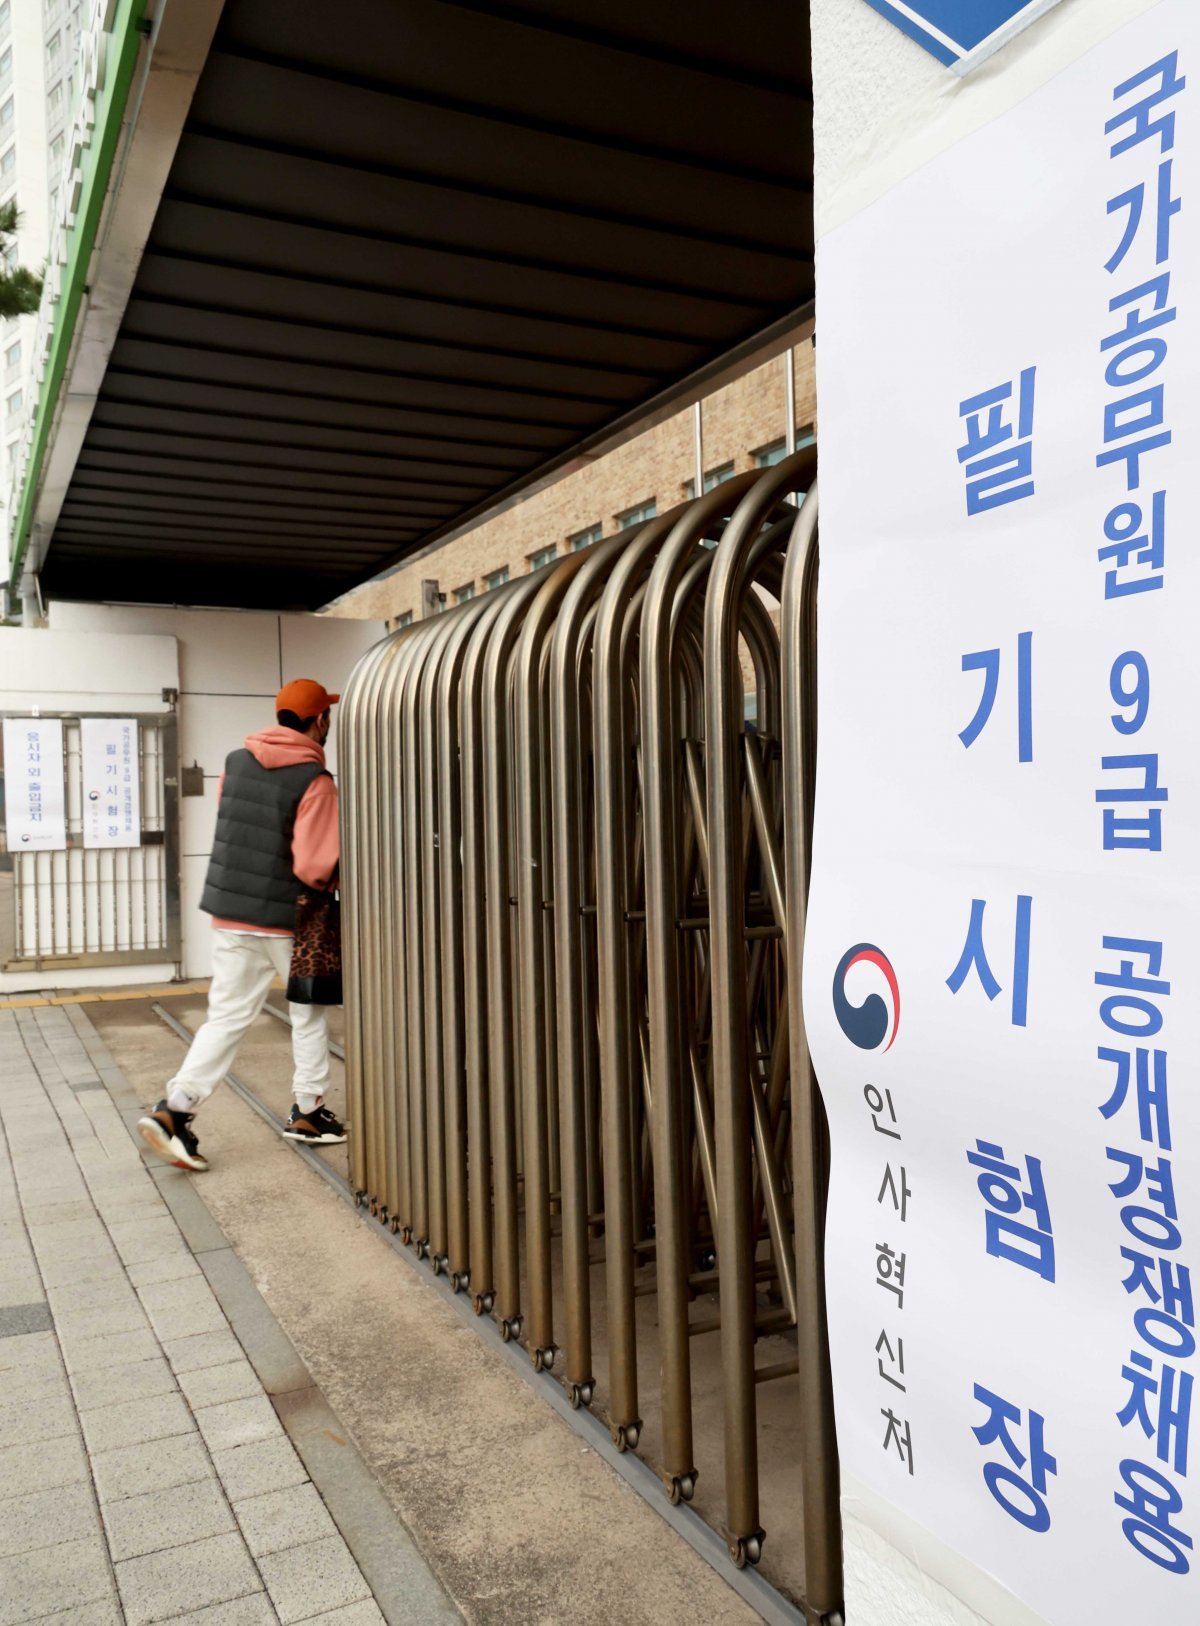 국가공무원 9급 공개경쟁채용 필기시험이 치러진 23일 한 수험생이 서울 용산구 한 시험장에 들어가고 있다.(인사혁신처 제공)